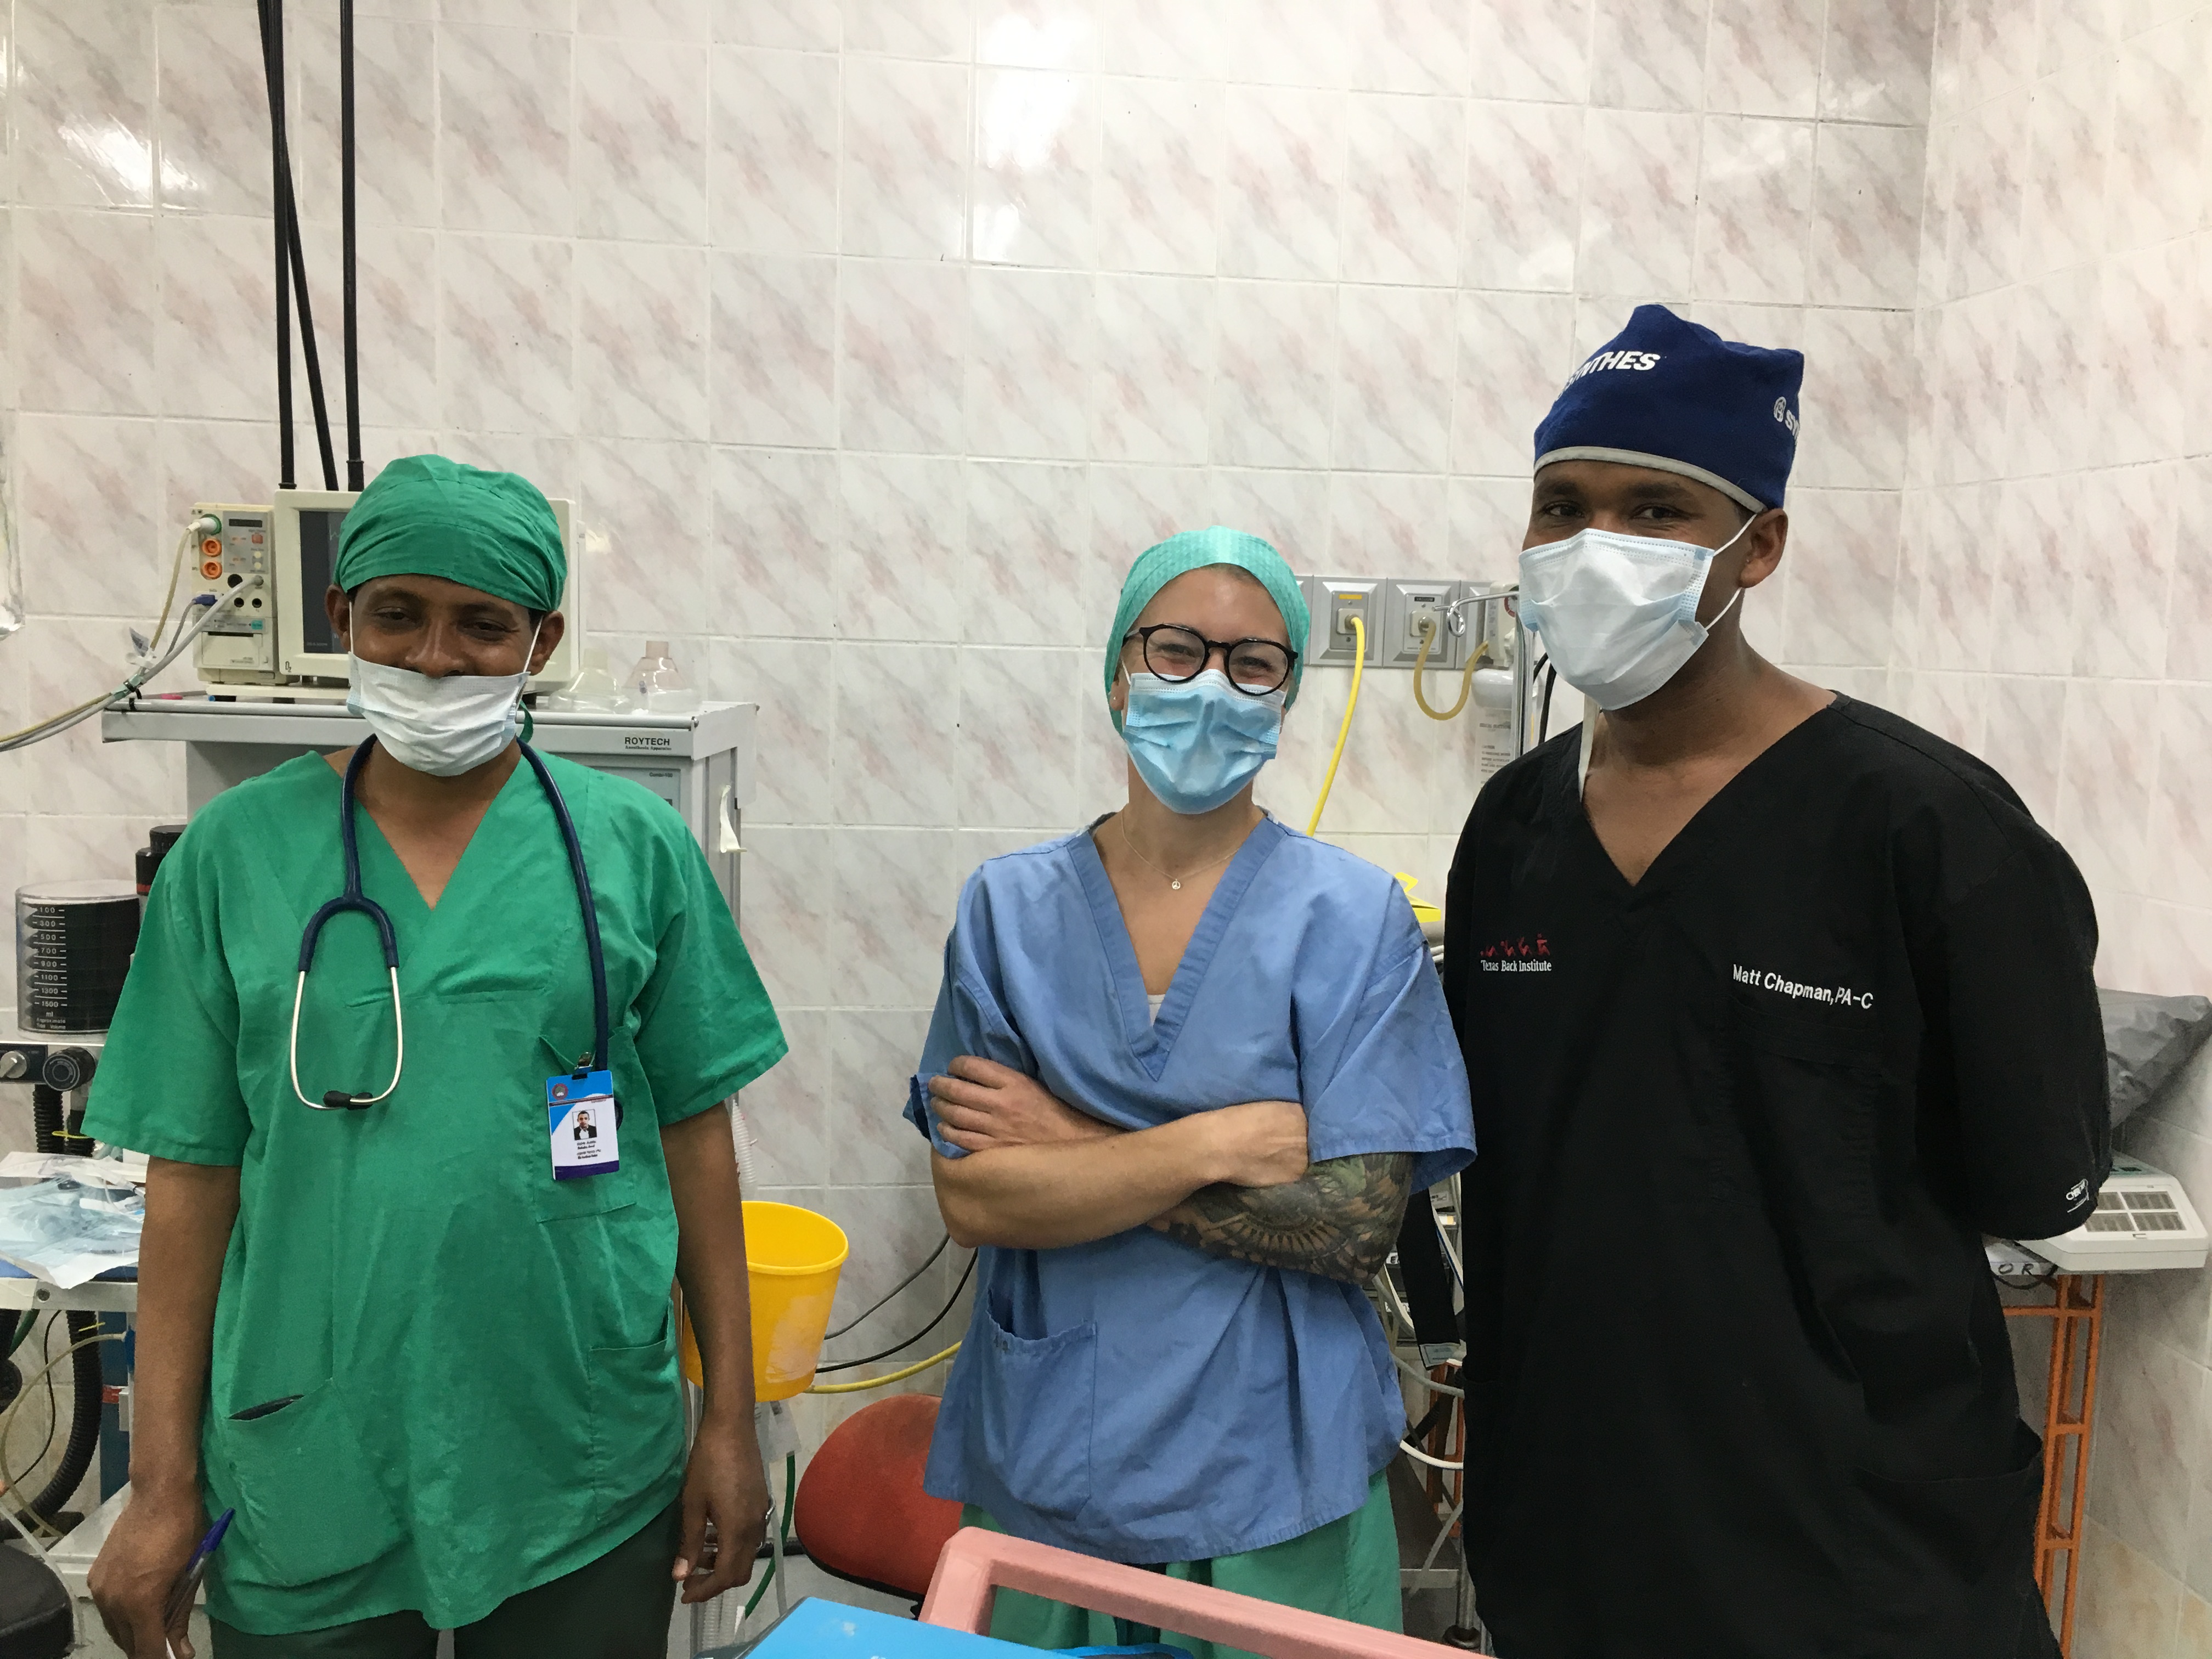 Andrea Frestadius, specialistsjuksköterska på Brännskadecentrum, tillsammans med två anestesisjuksköterskor på sjukhuset i Etiopien.